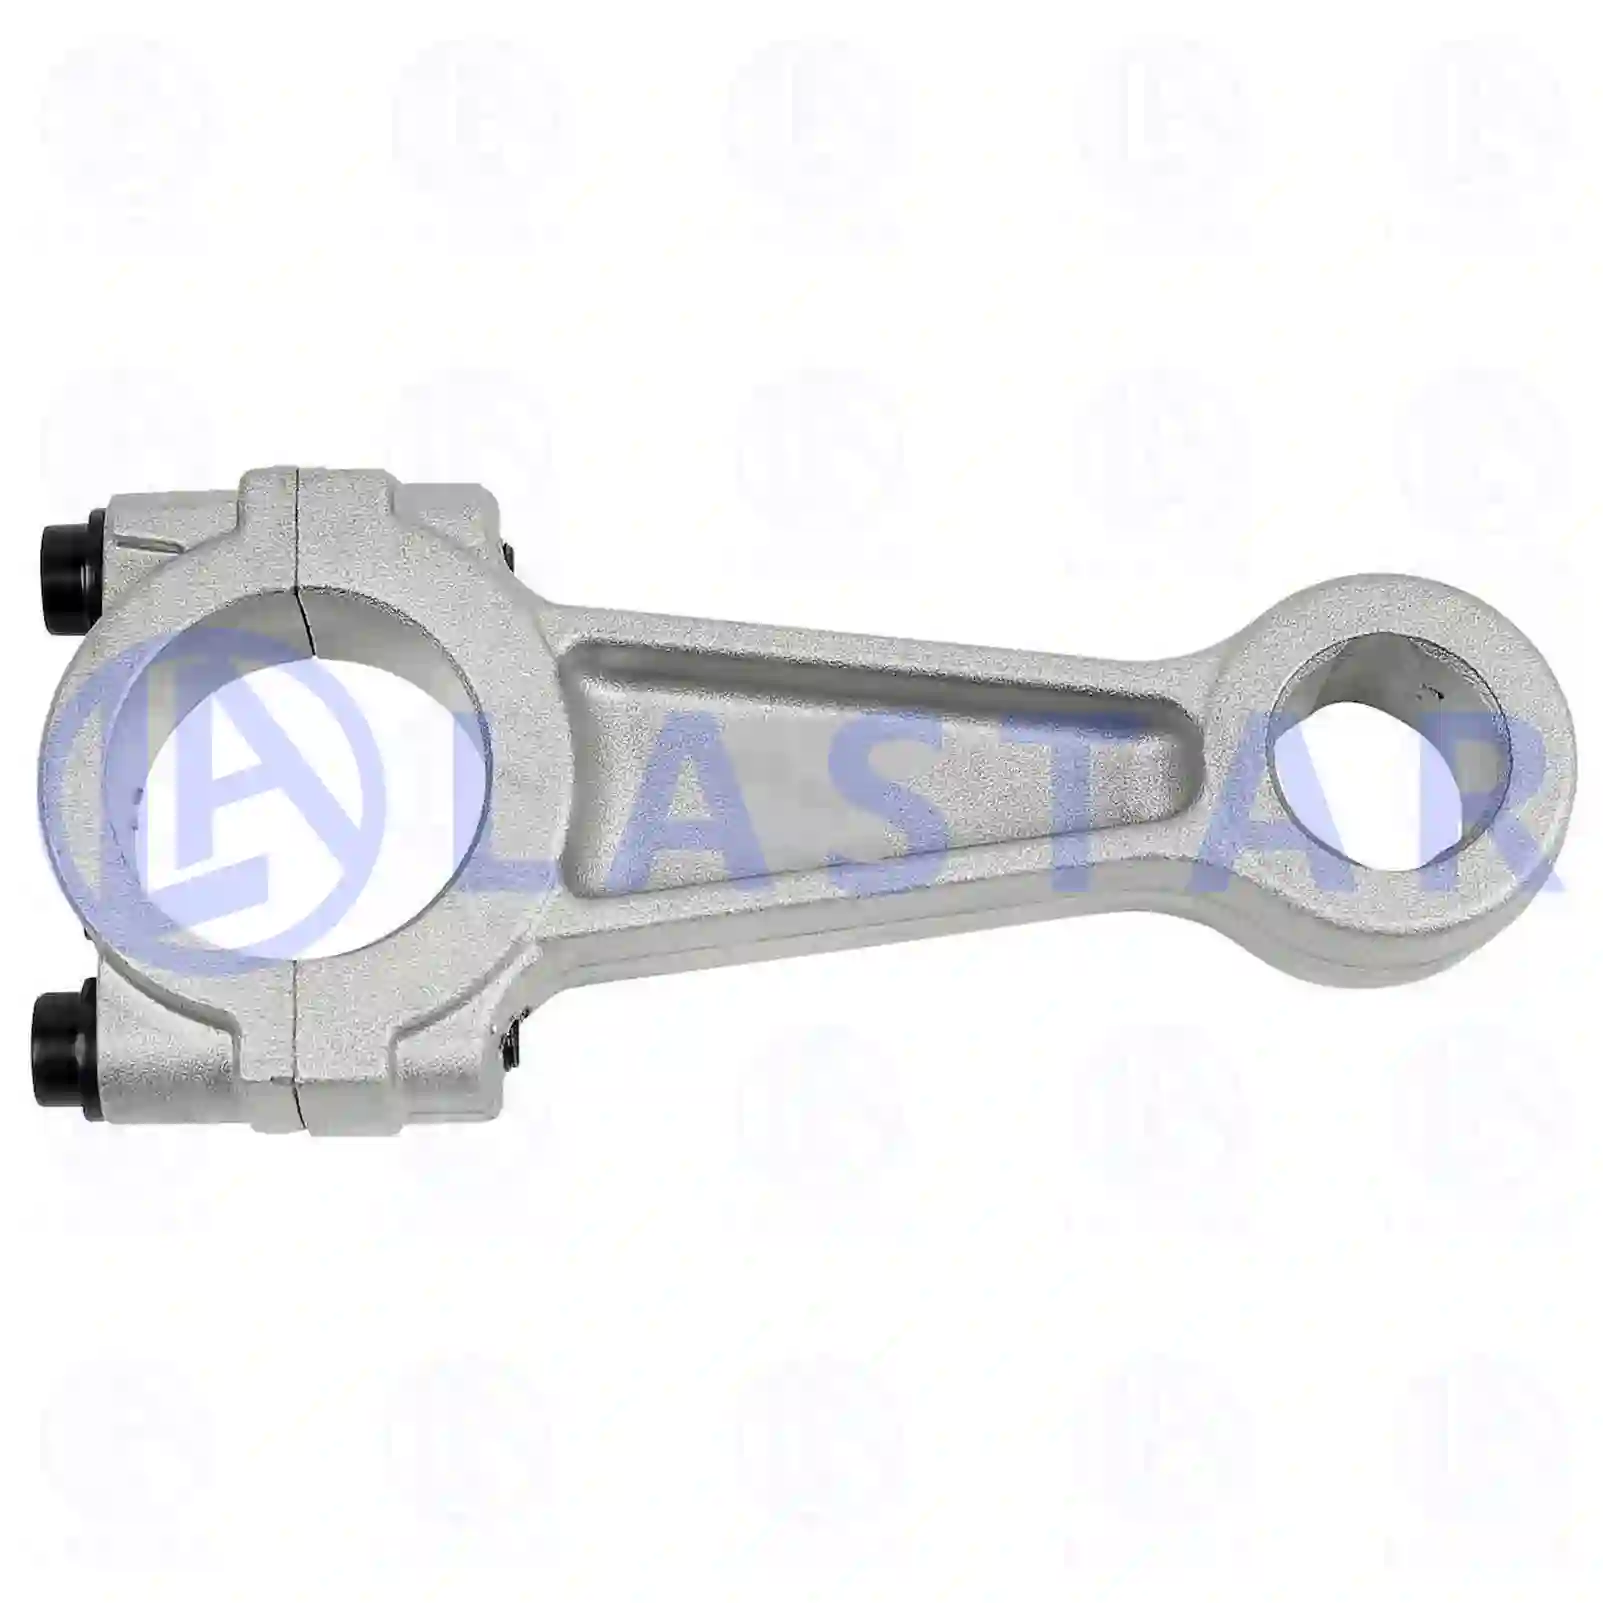 Compressor Connecting rod, compressor, la no: 77715168 ,  oem no:1312717 Lastar Spare Part | Truck Spare Parts, Auotomotive Spare Parts